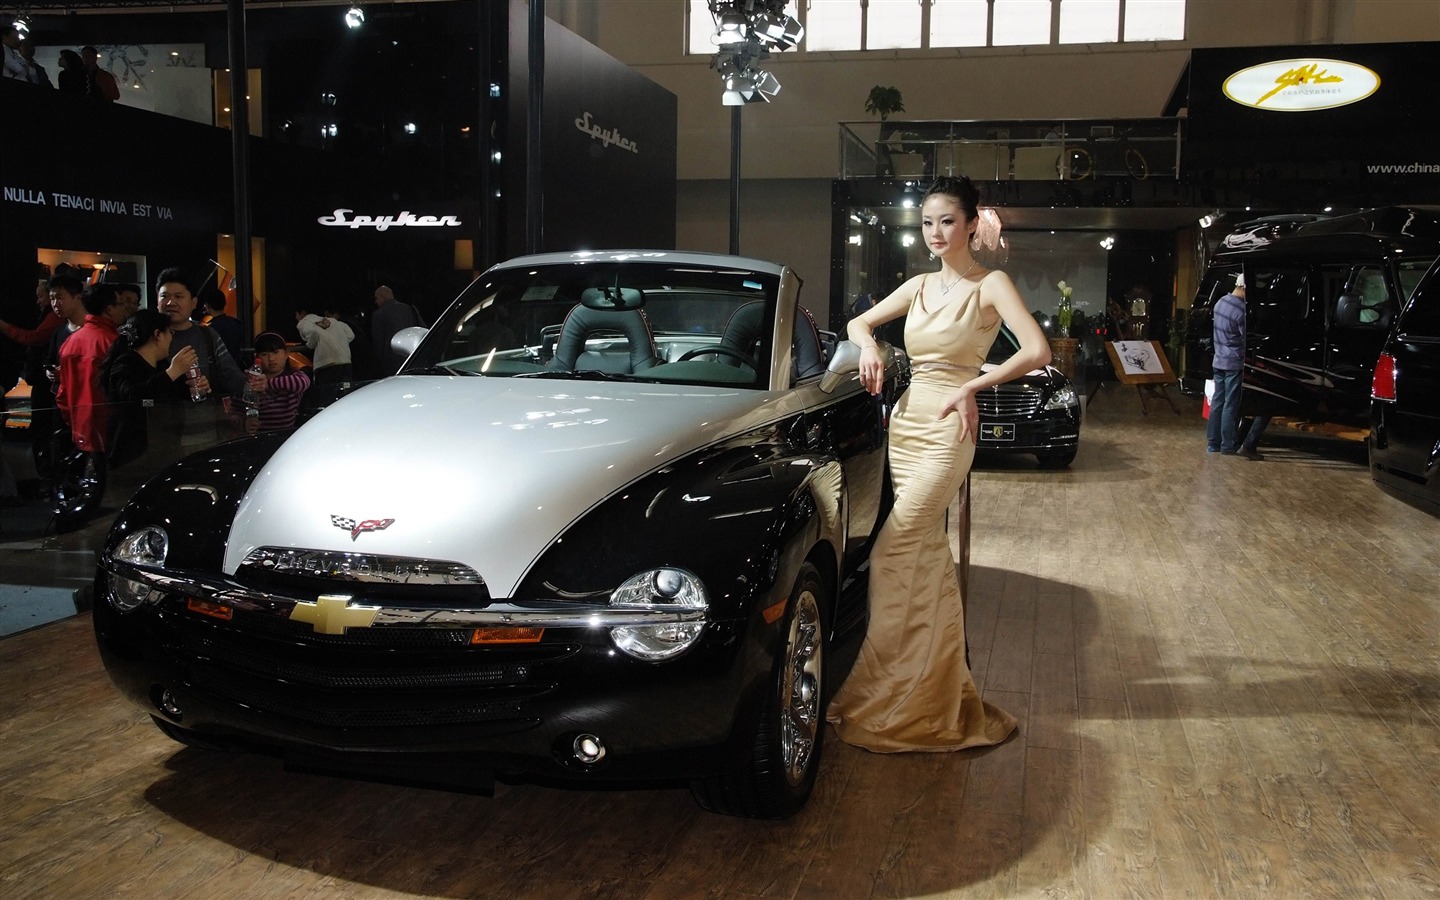 2010北京国际车展 香车美女 (螺纹钢作品)15 - 1440x900